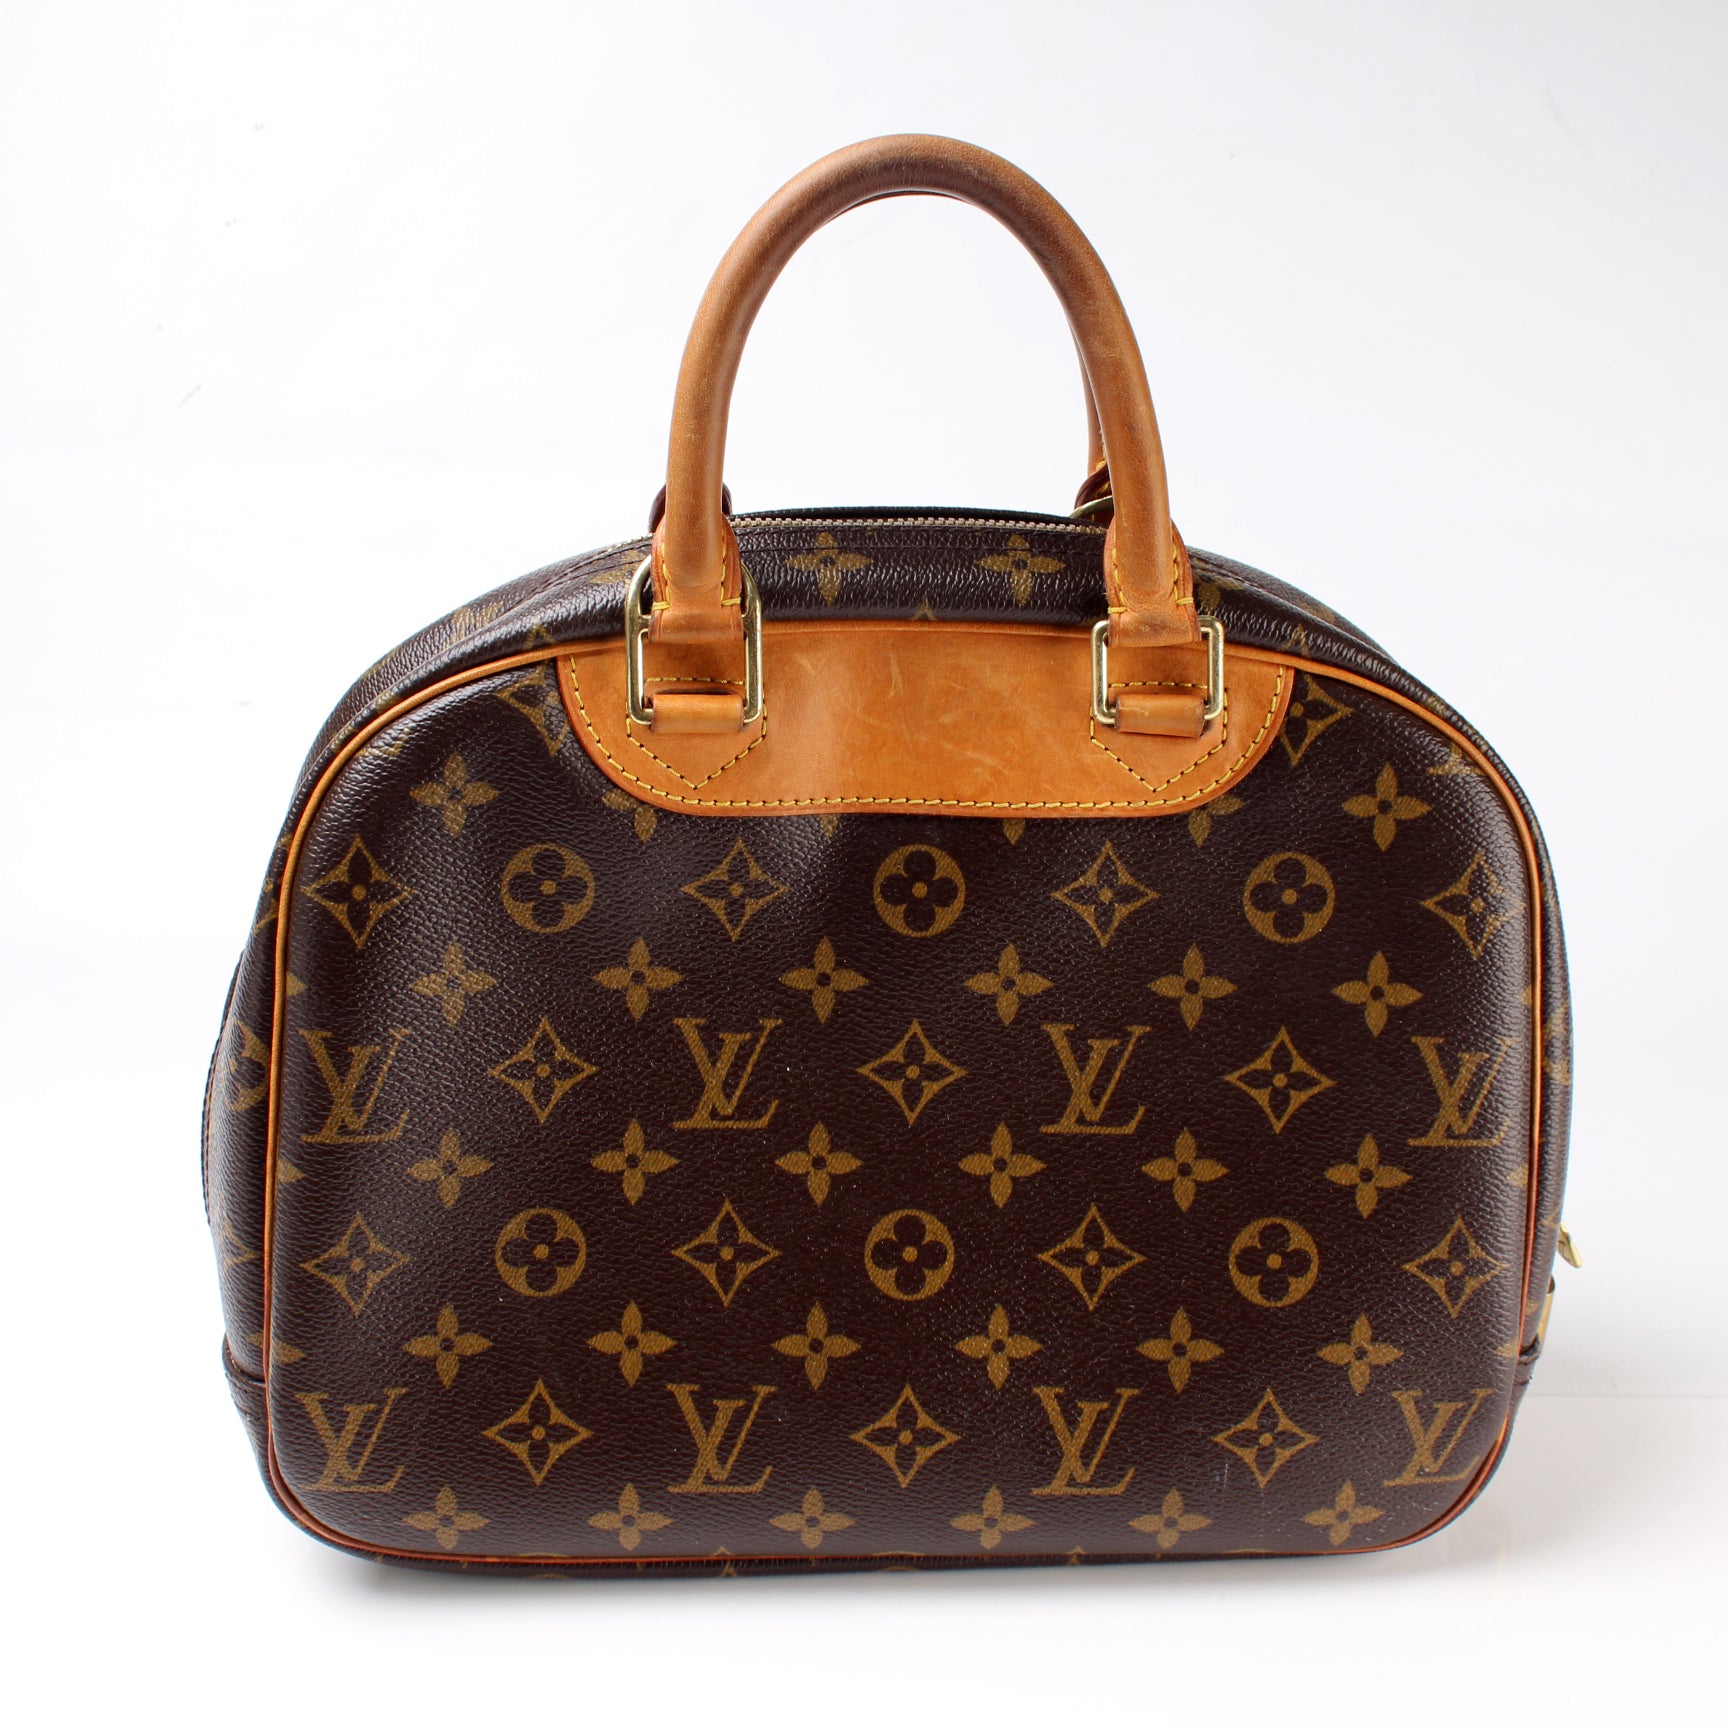 Louis Vuitton 2004 Pre-owned Trouville Handbag